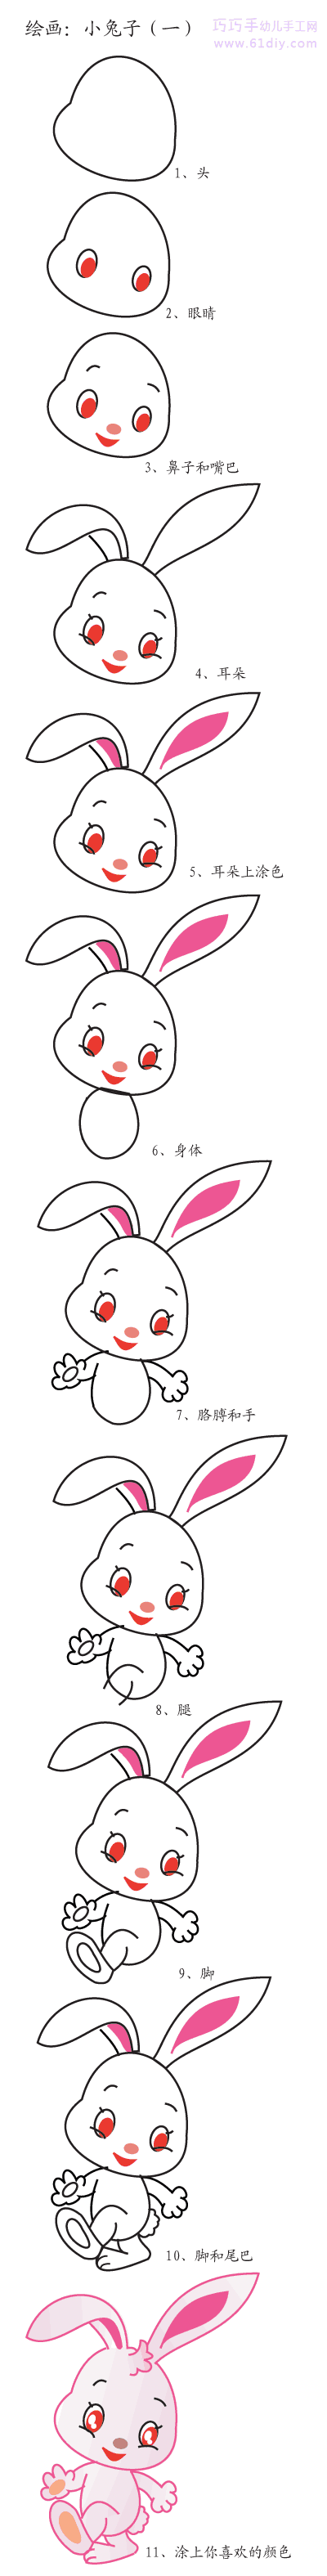 小兔子的画法步骤图解_动物简笔画_巧巧手幼儿手工网